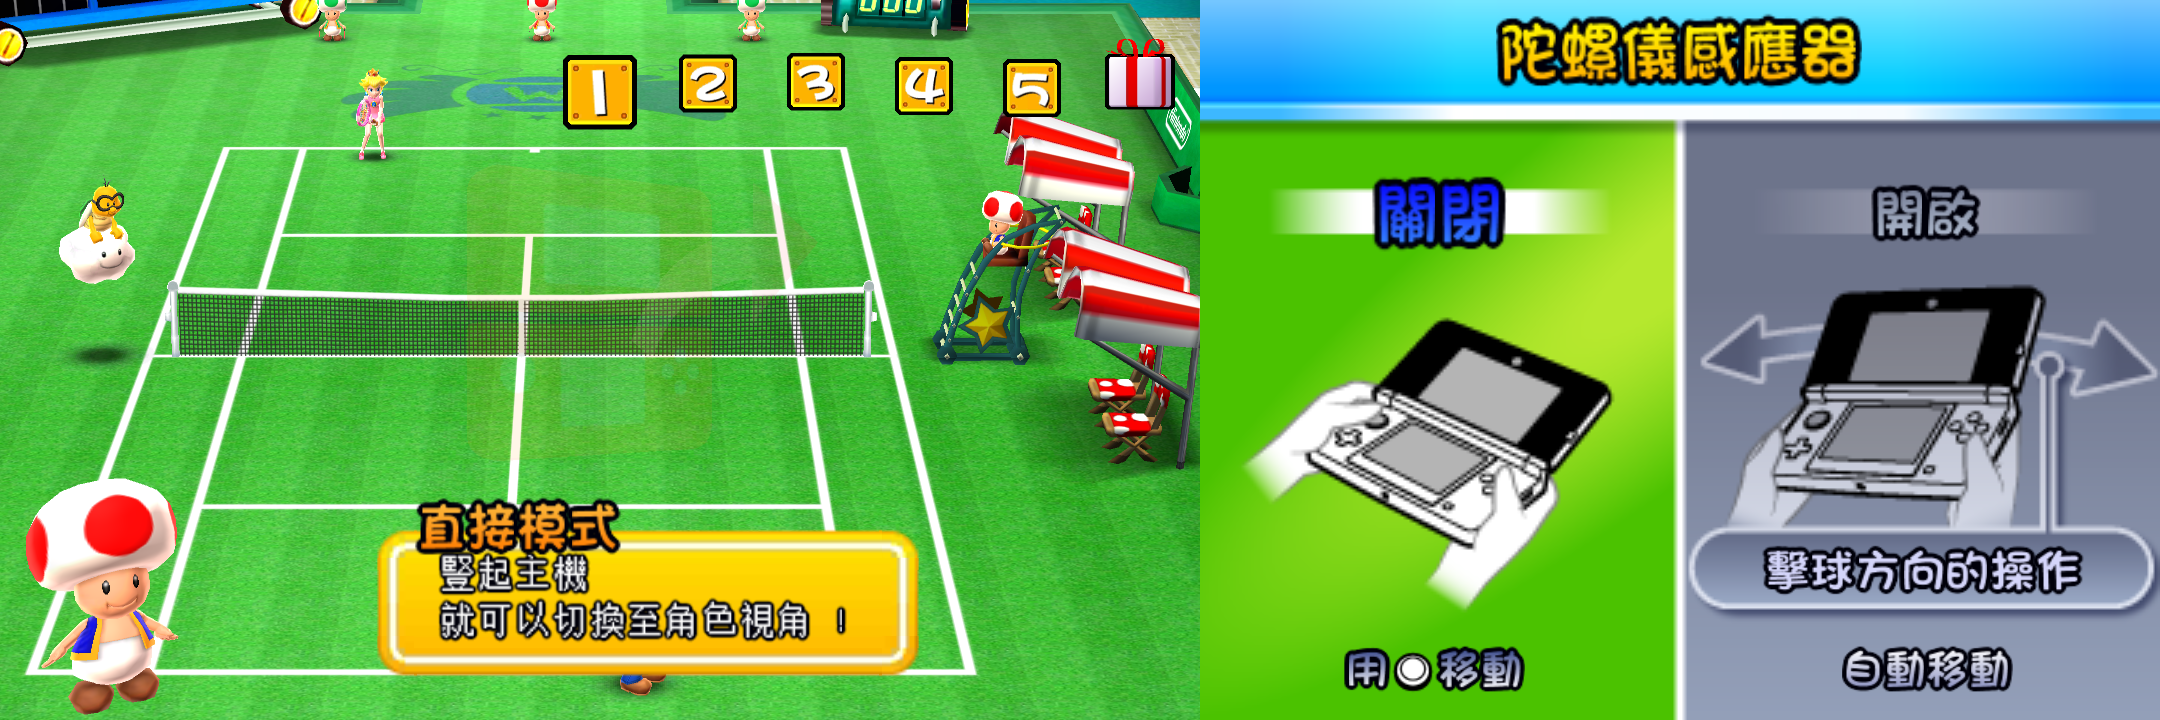 3DS 马里奥网球公开赛游戏截图